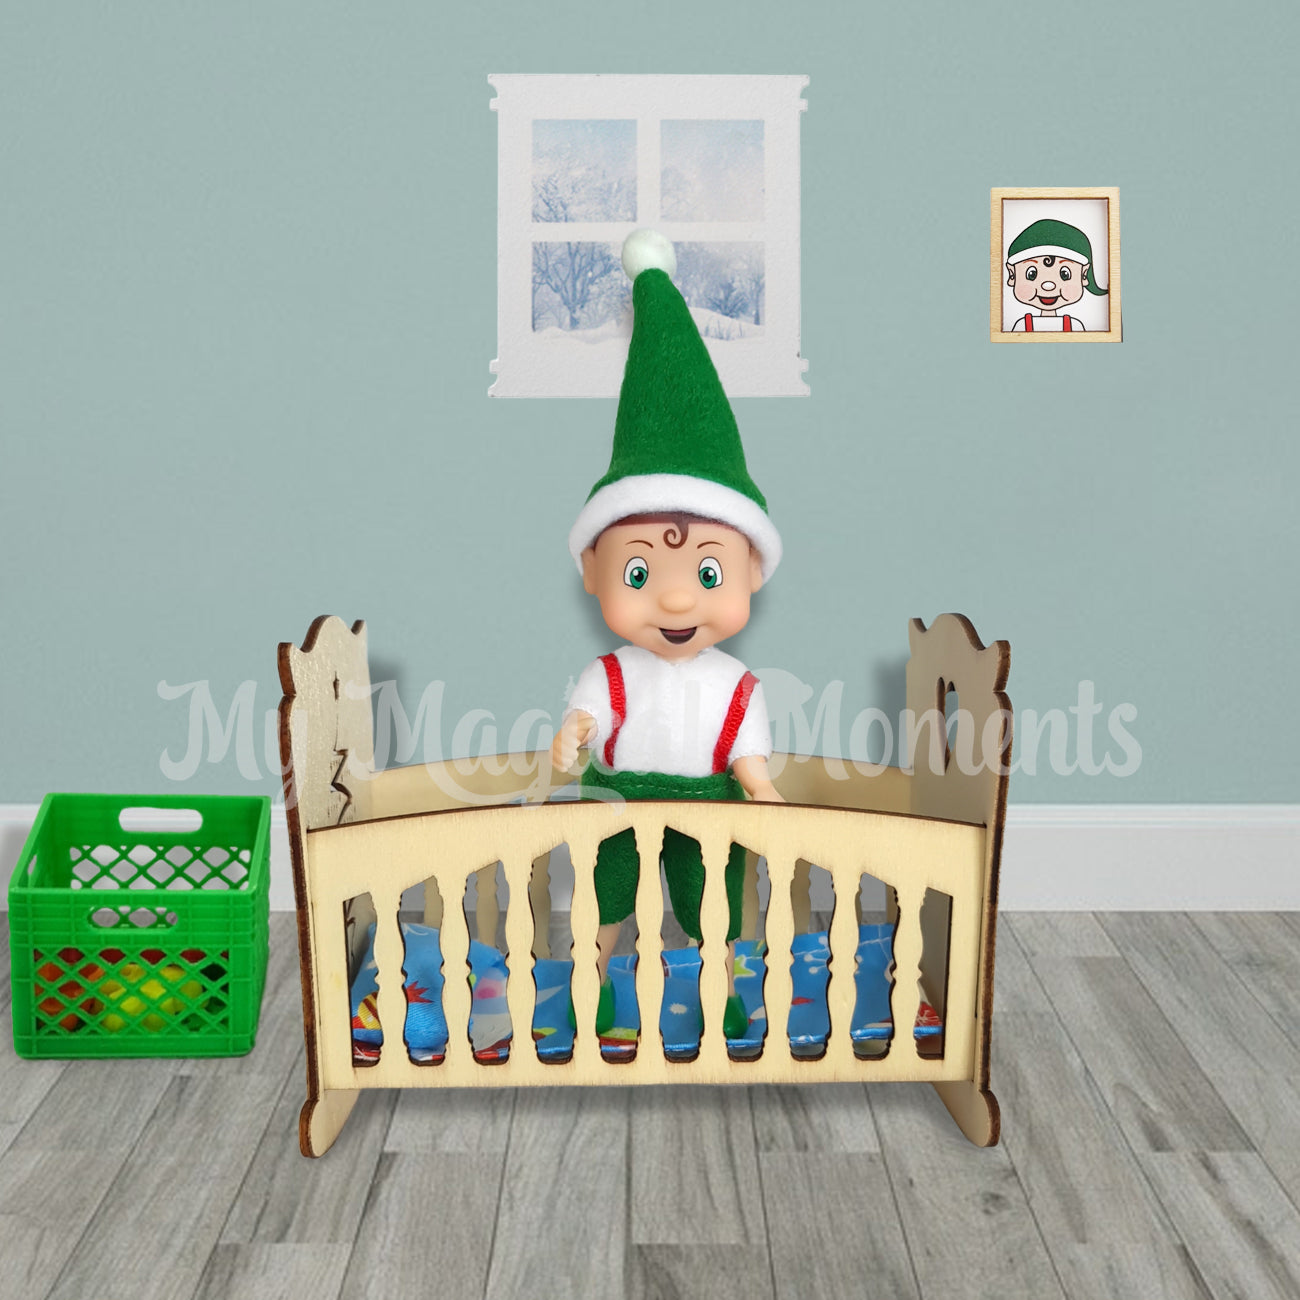 Elf toddler in miniature wooden cot